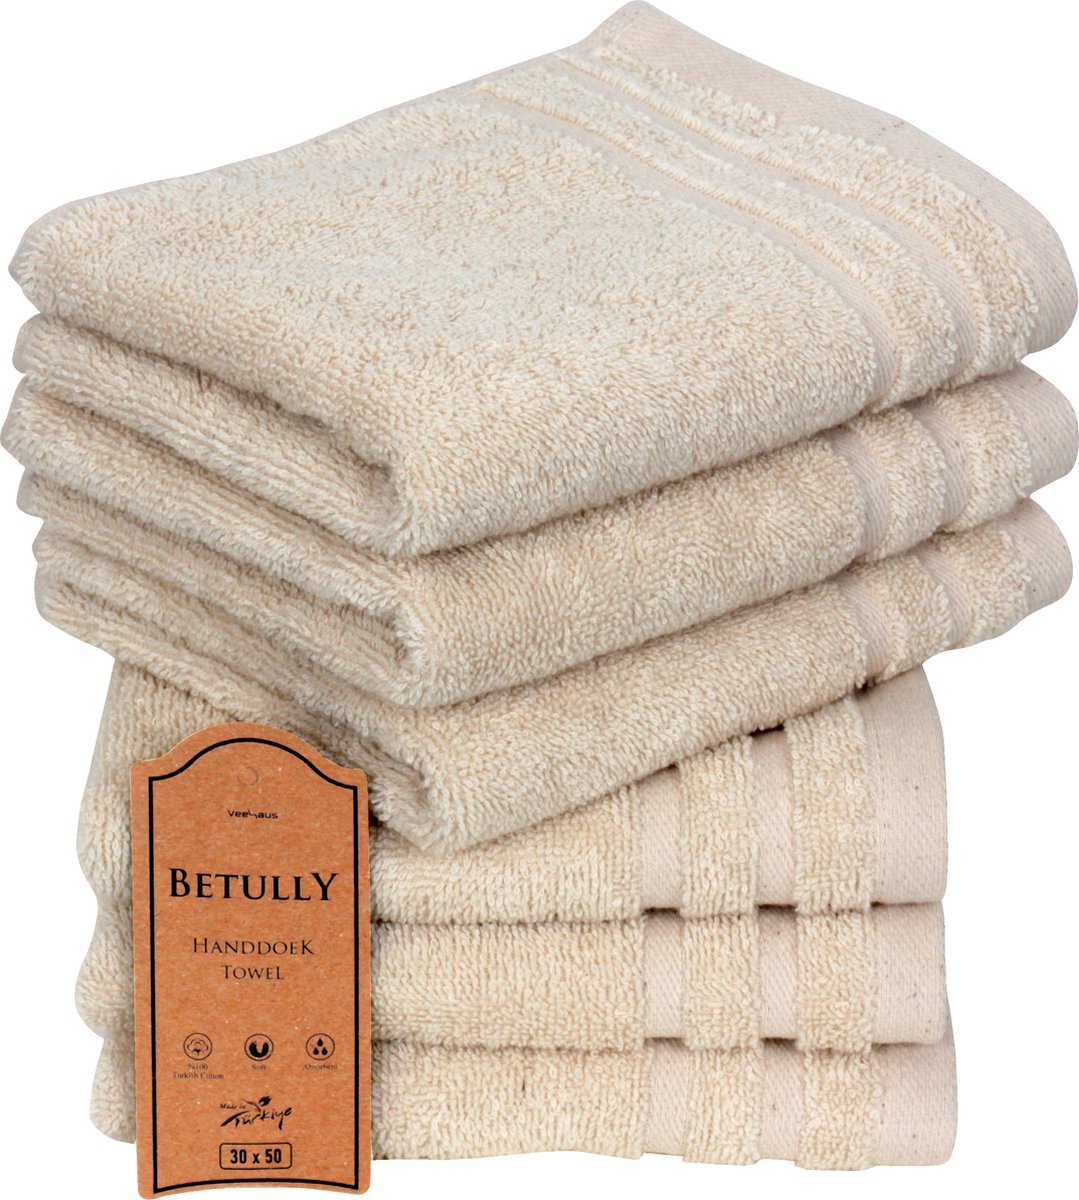 VeehausBetully - Handdoeken 30 x 50 cm - set van 6 - Hotelkwaliteit – Zware kwaliteit 500 g/m2 Natuur Creme